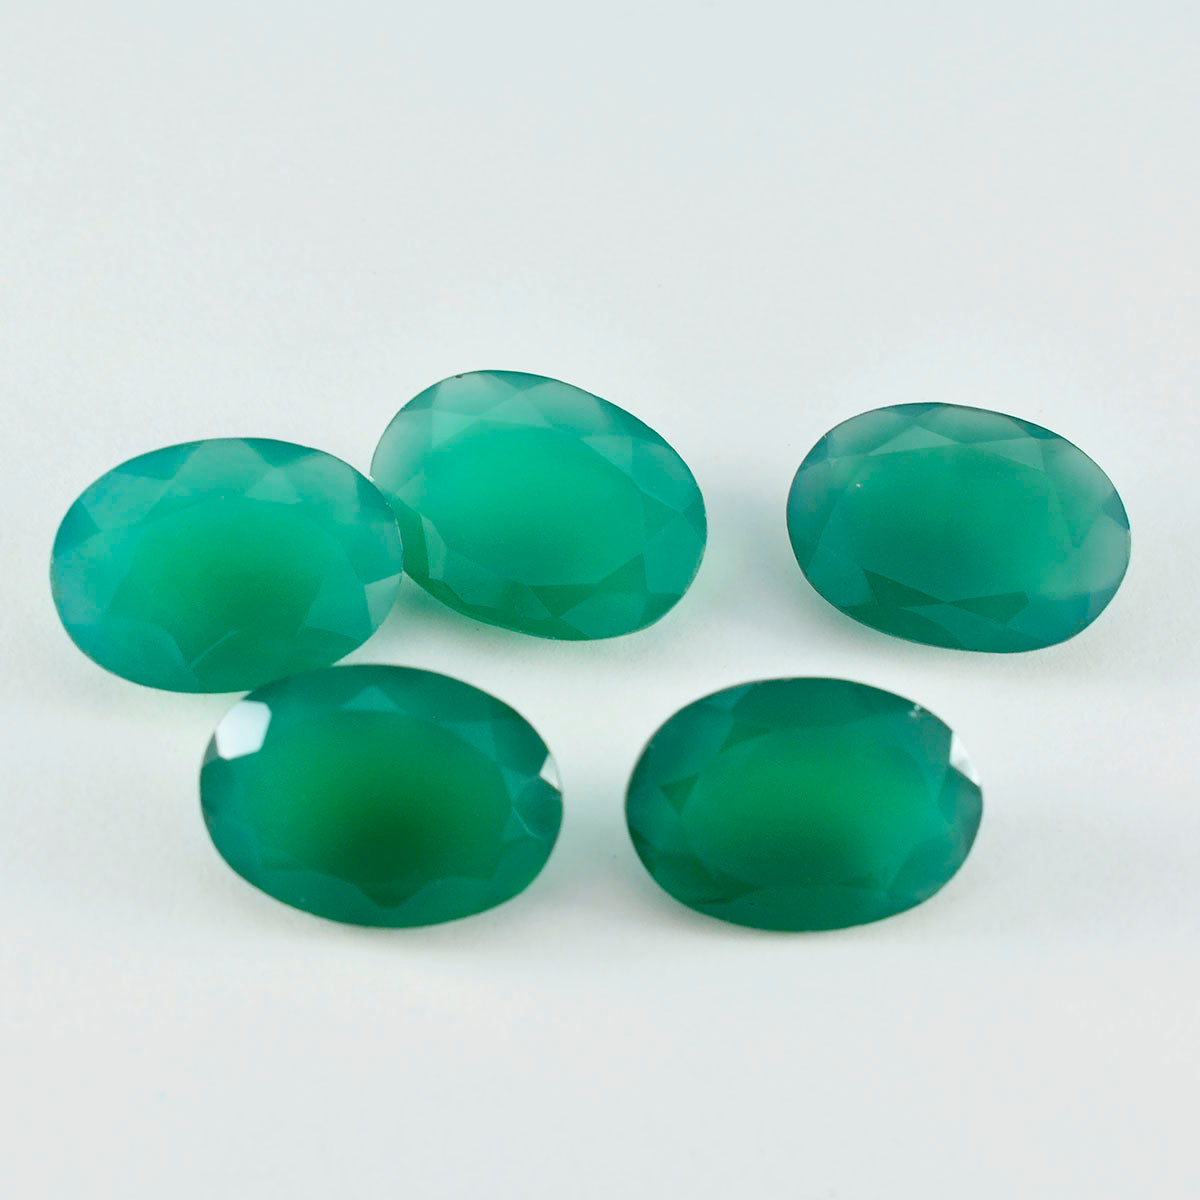 Riyogems 1 Stück natürlicher grüner Onyx, facettiert, 10 x 14 mm, ovale Form, wunderbare Qualität, lose Edelsteine